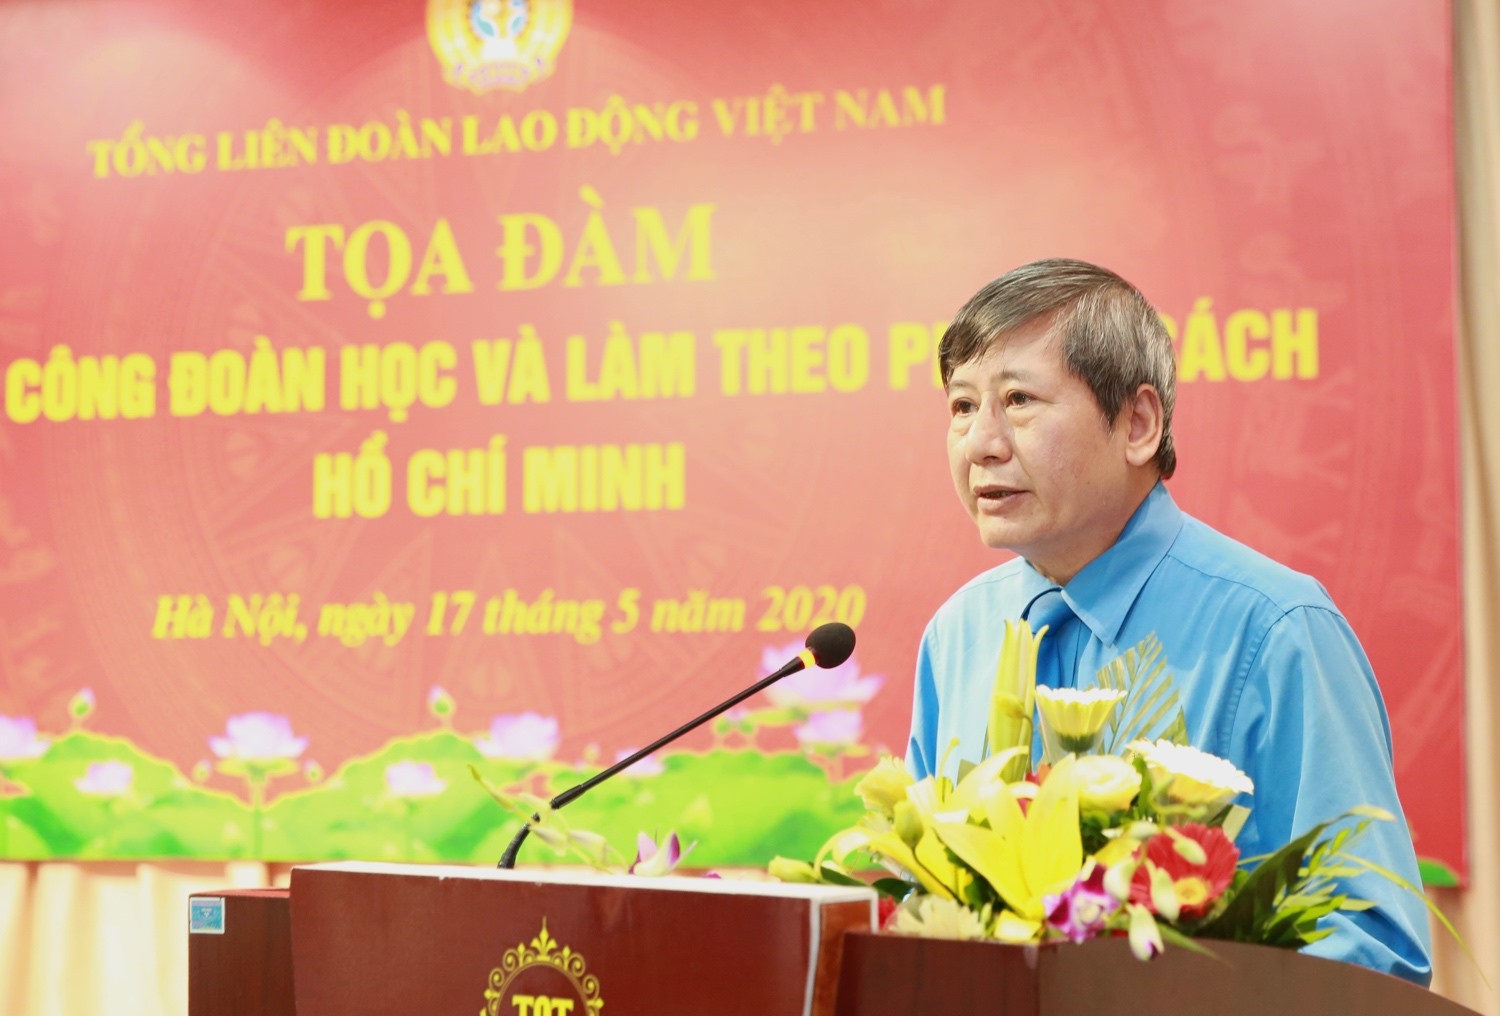 Đồng chí Trần Thanh Hải – Phó Chủ tịch Thường trực Tổng Liên đoàn Lao động Việt Nam - phát biểu tại buổi tọa đàm. Ảnh: Hải Nguyễn.